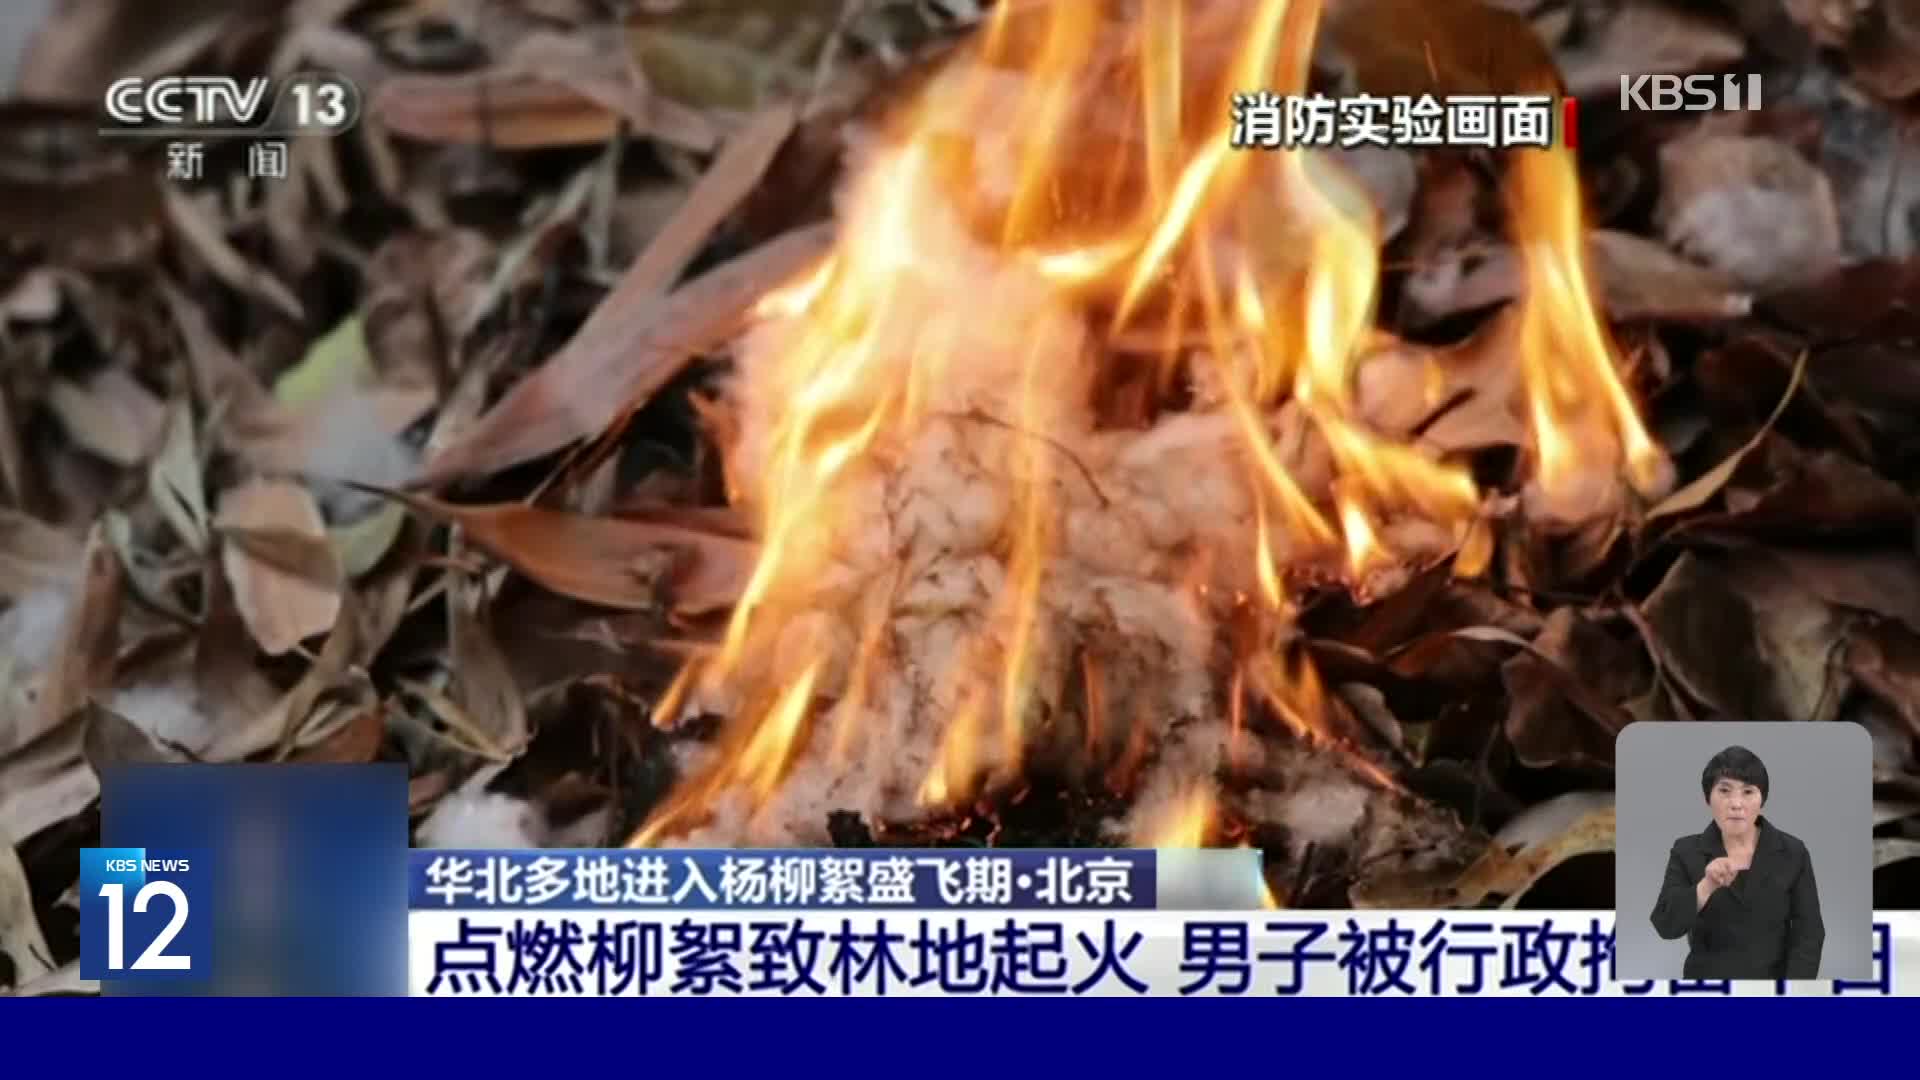 중국, 버드나무 꽃가루 화재 위험 커